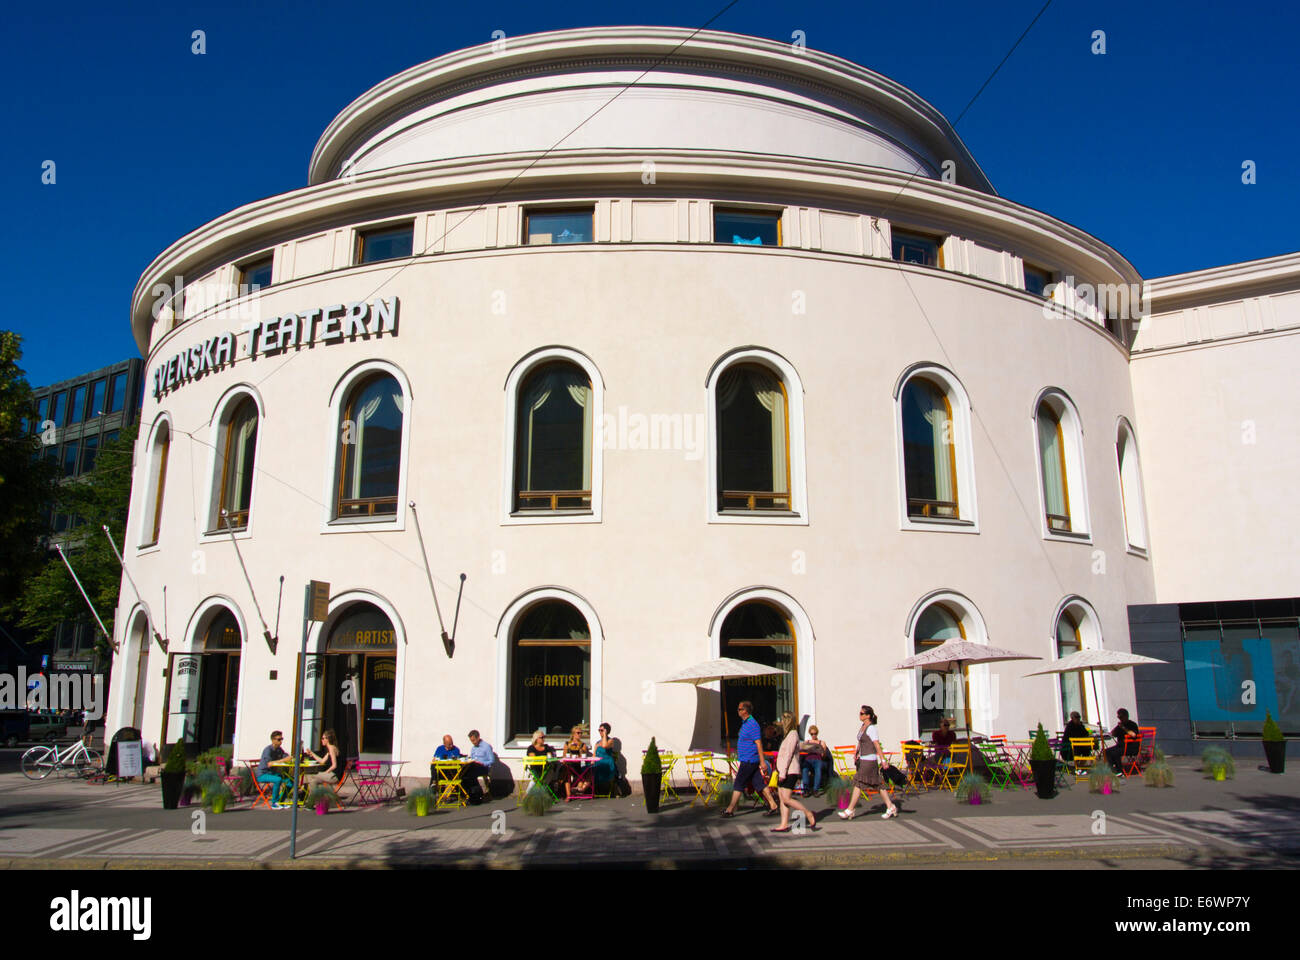 Svenska Teatern, Ruotsalainen teatteri, the Swedish Theatre, Erottaja, central Helsinki, Finland, Europe Stock Photo